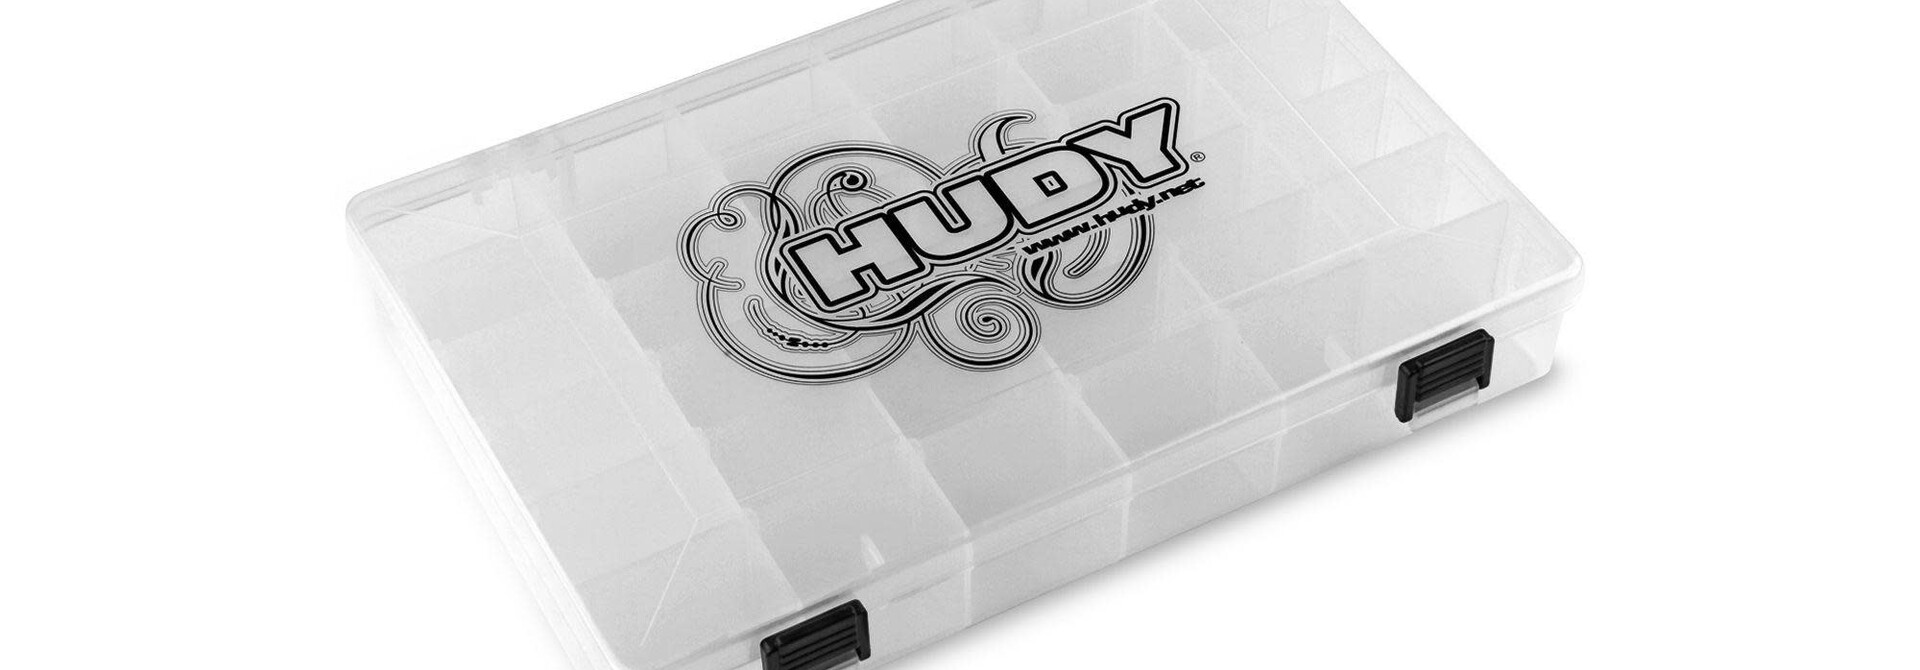 HUDY PARTS CASE - 275 x 180mm